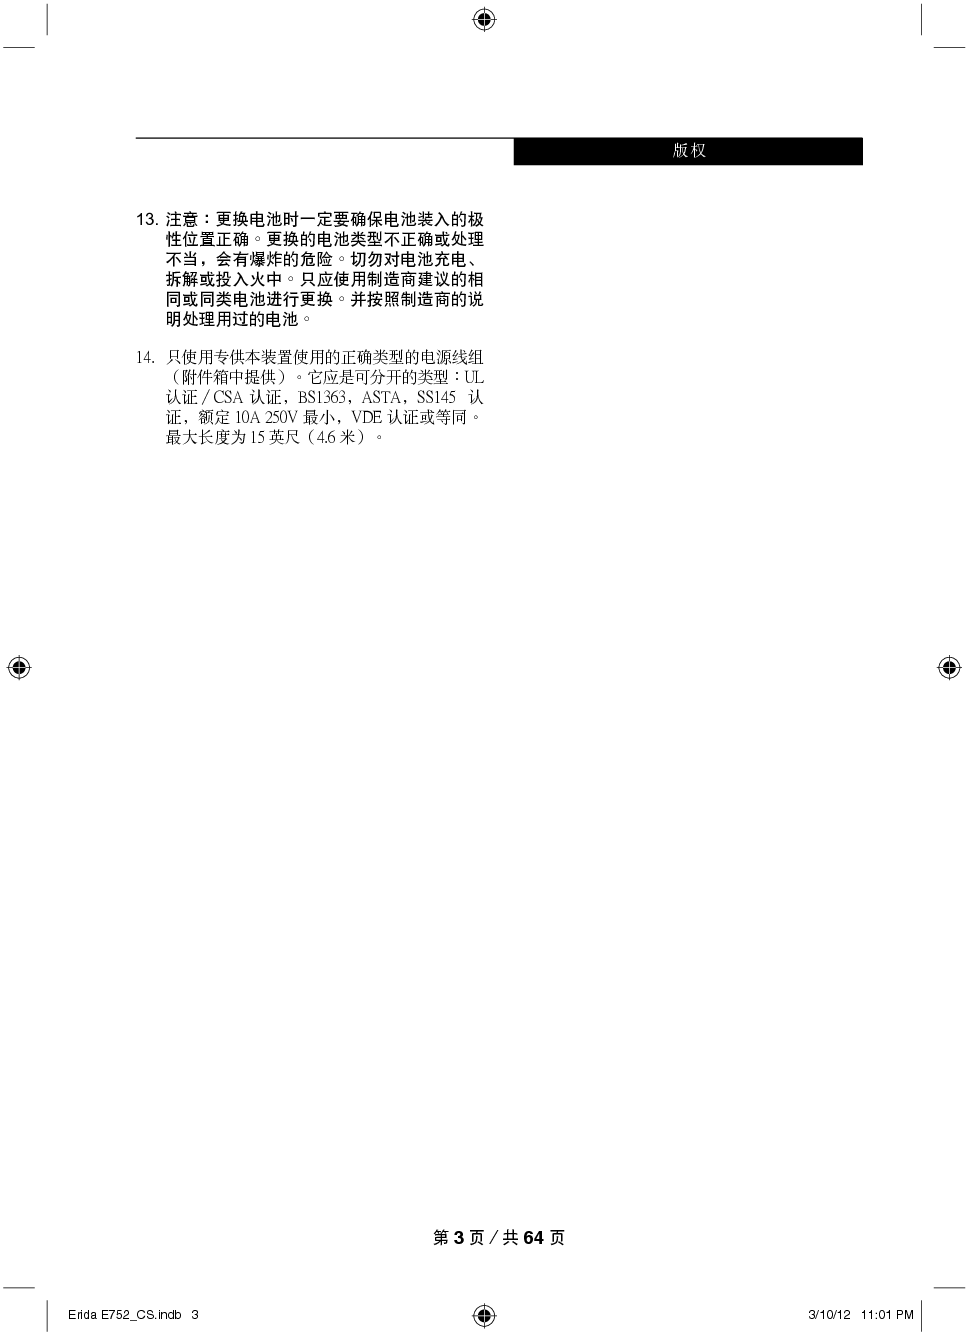 富士通 Fujitsu LifeBook E752 Windows 7 使用说明书 第2页